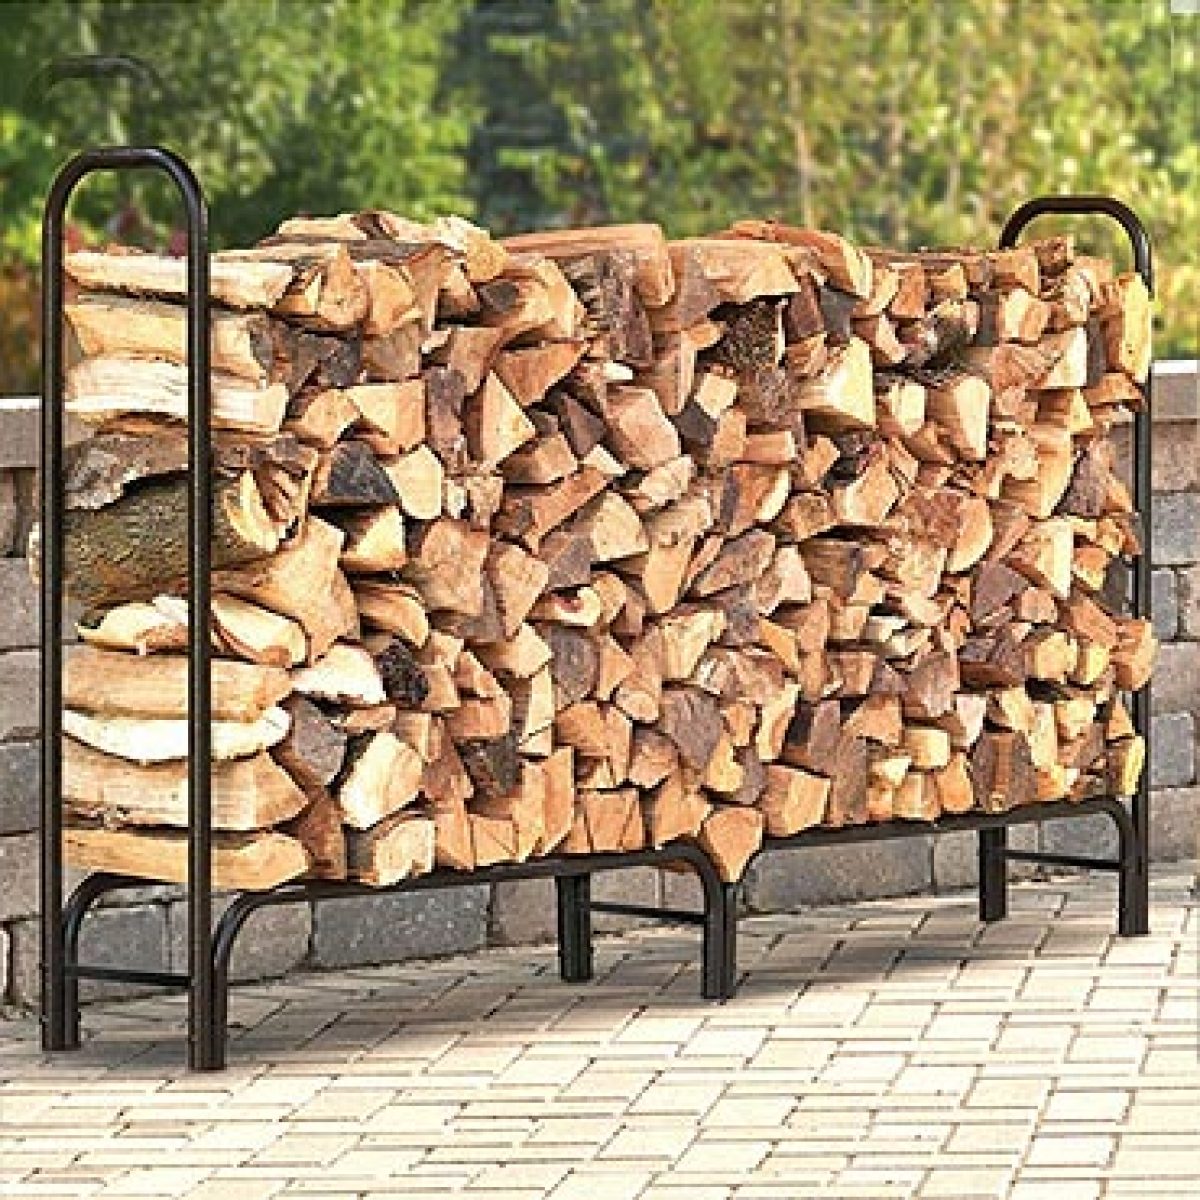 Comment stocker le bois de chauffage à l'intérieur et l'extérieur